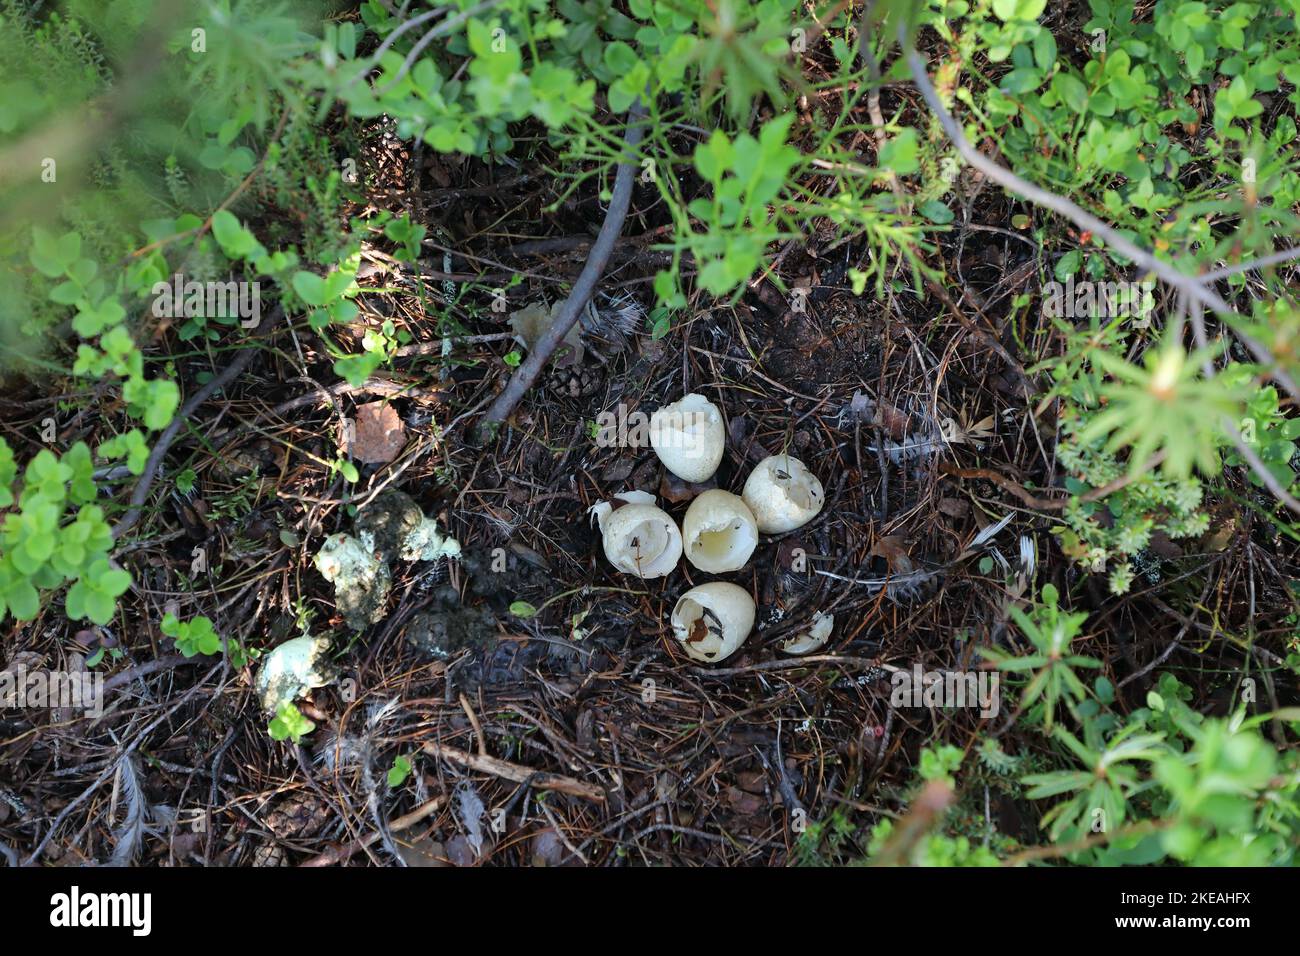 cappuccaille occidentale, gallo di legno (Tetrao urogallus), nido con gusci di uovo dopo la cova dei pulcini, Finlandia, Kajaani, Kainuu Foto Stock